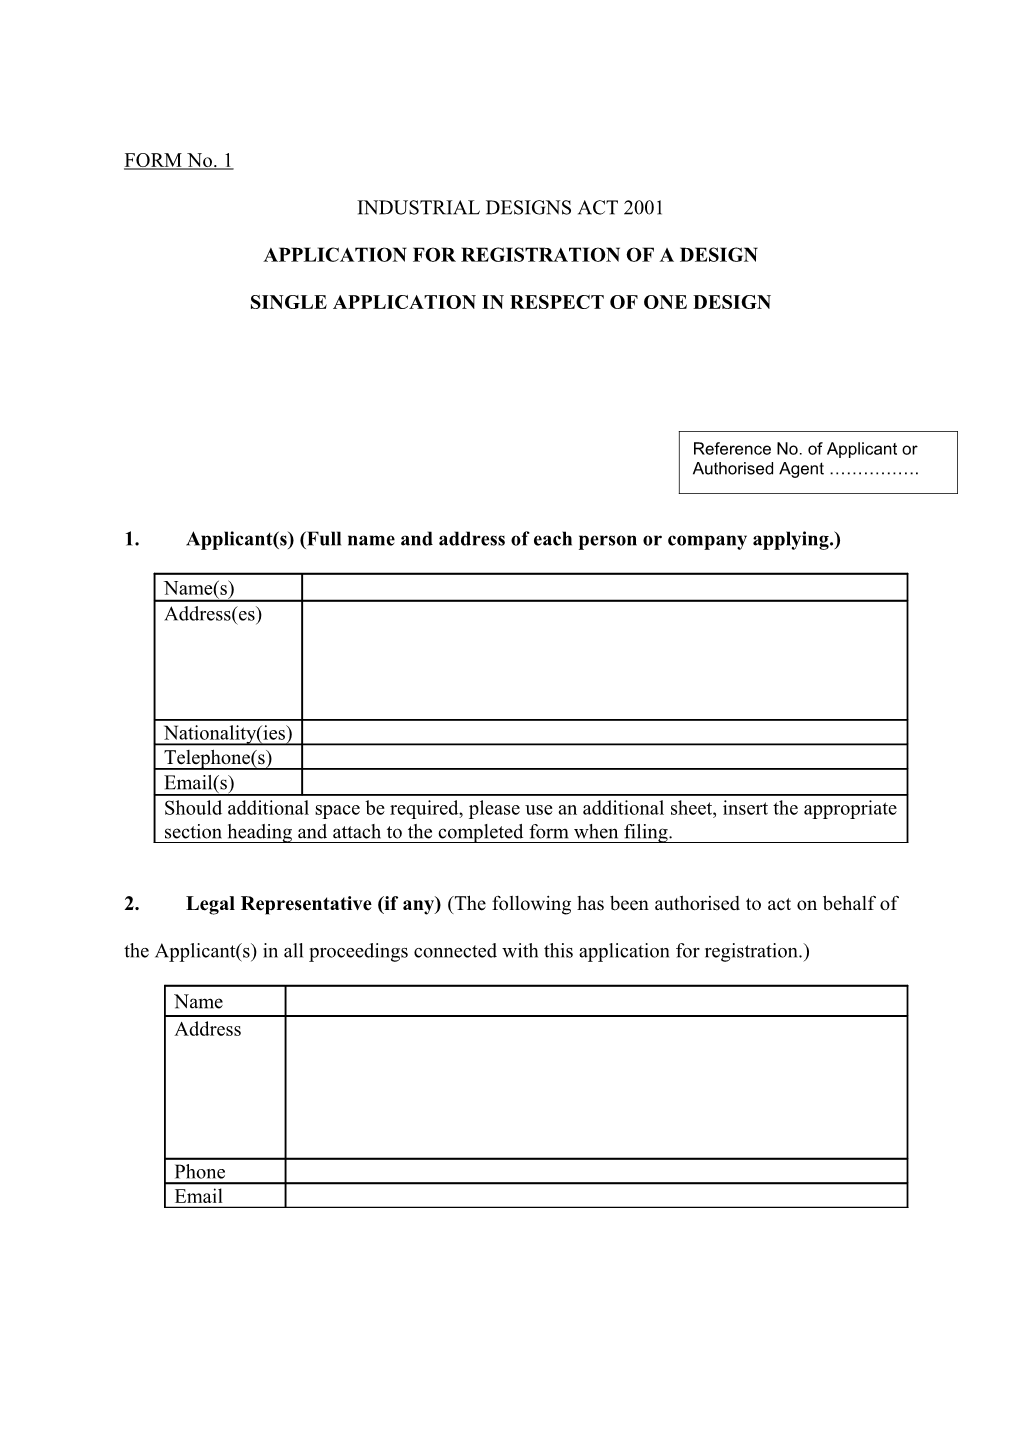 Application for Registration of a Design